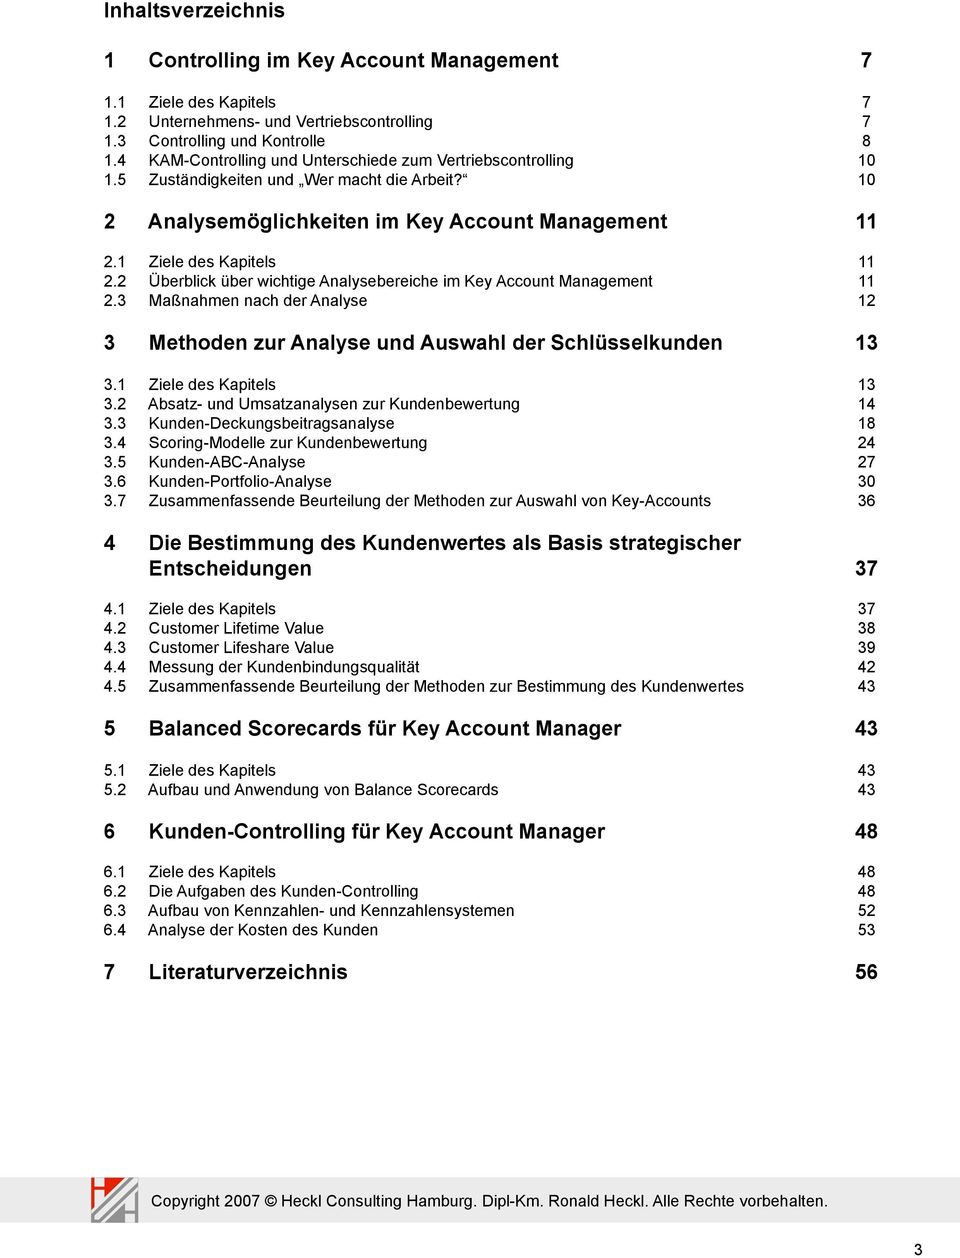 2 Überblick über wichtige Analysebereiche im Key Account Management 11 2.3 Maßnahmen nach der Analyse 12 3 Methoden zur Analyse und Auswahl der Schlüsselkunden 13 3.1 Ziele des Kapitels 13 3.